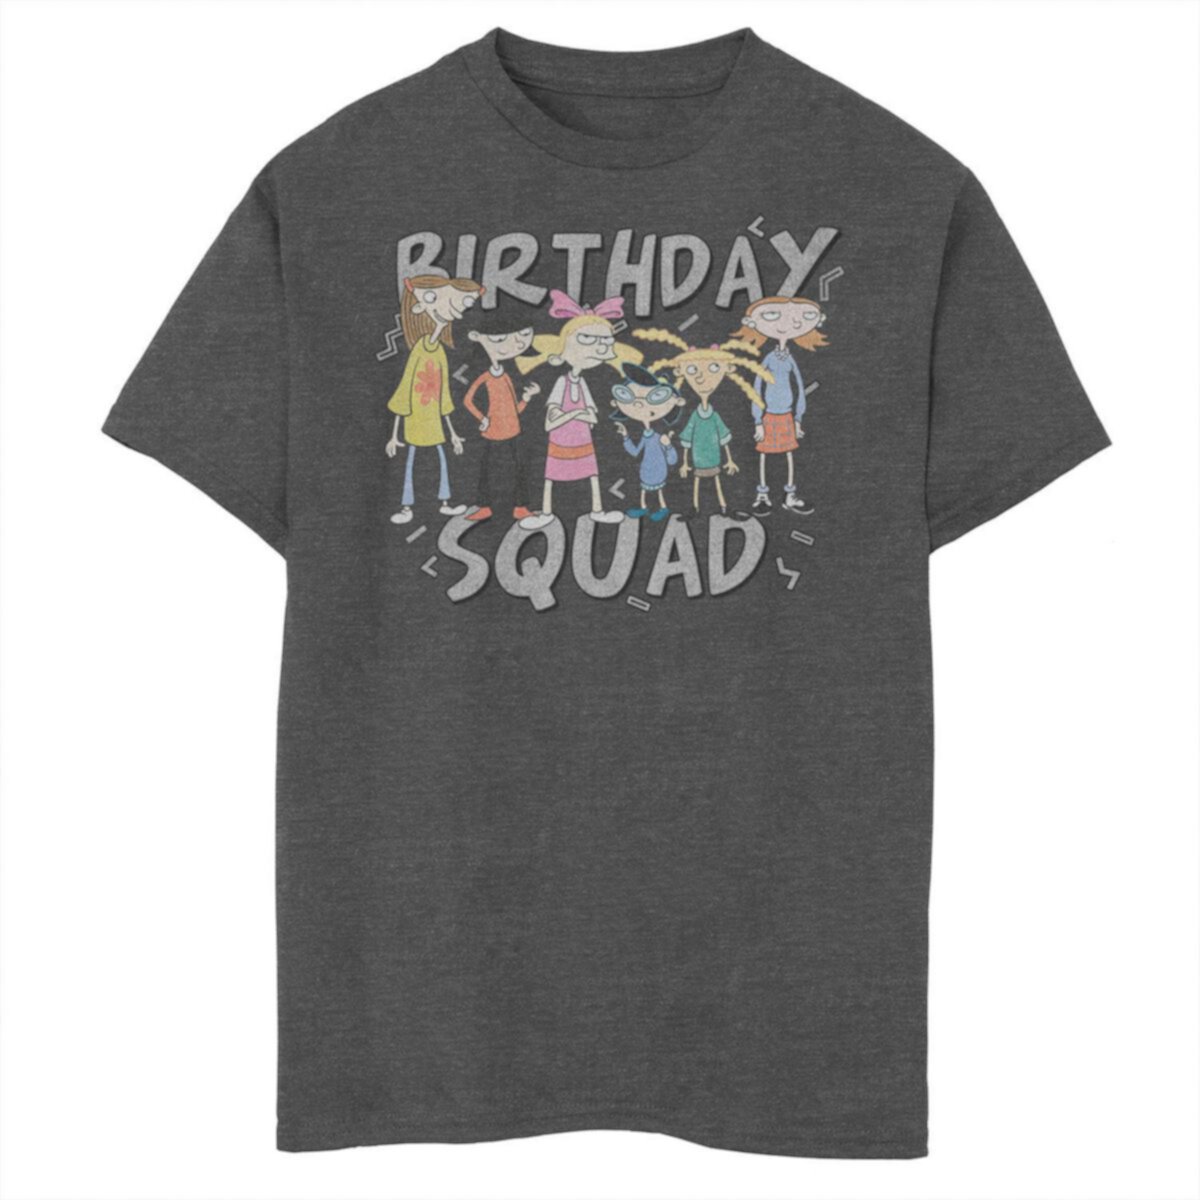 Футболка для мальчиков 8-20 Nickelodeon Hey Arnold Birthday Squad Group Shot с графическим рисунком Nickelodeon